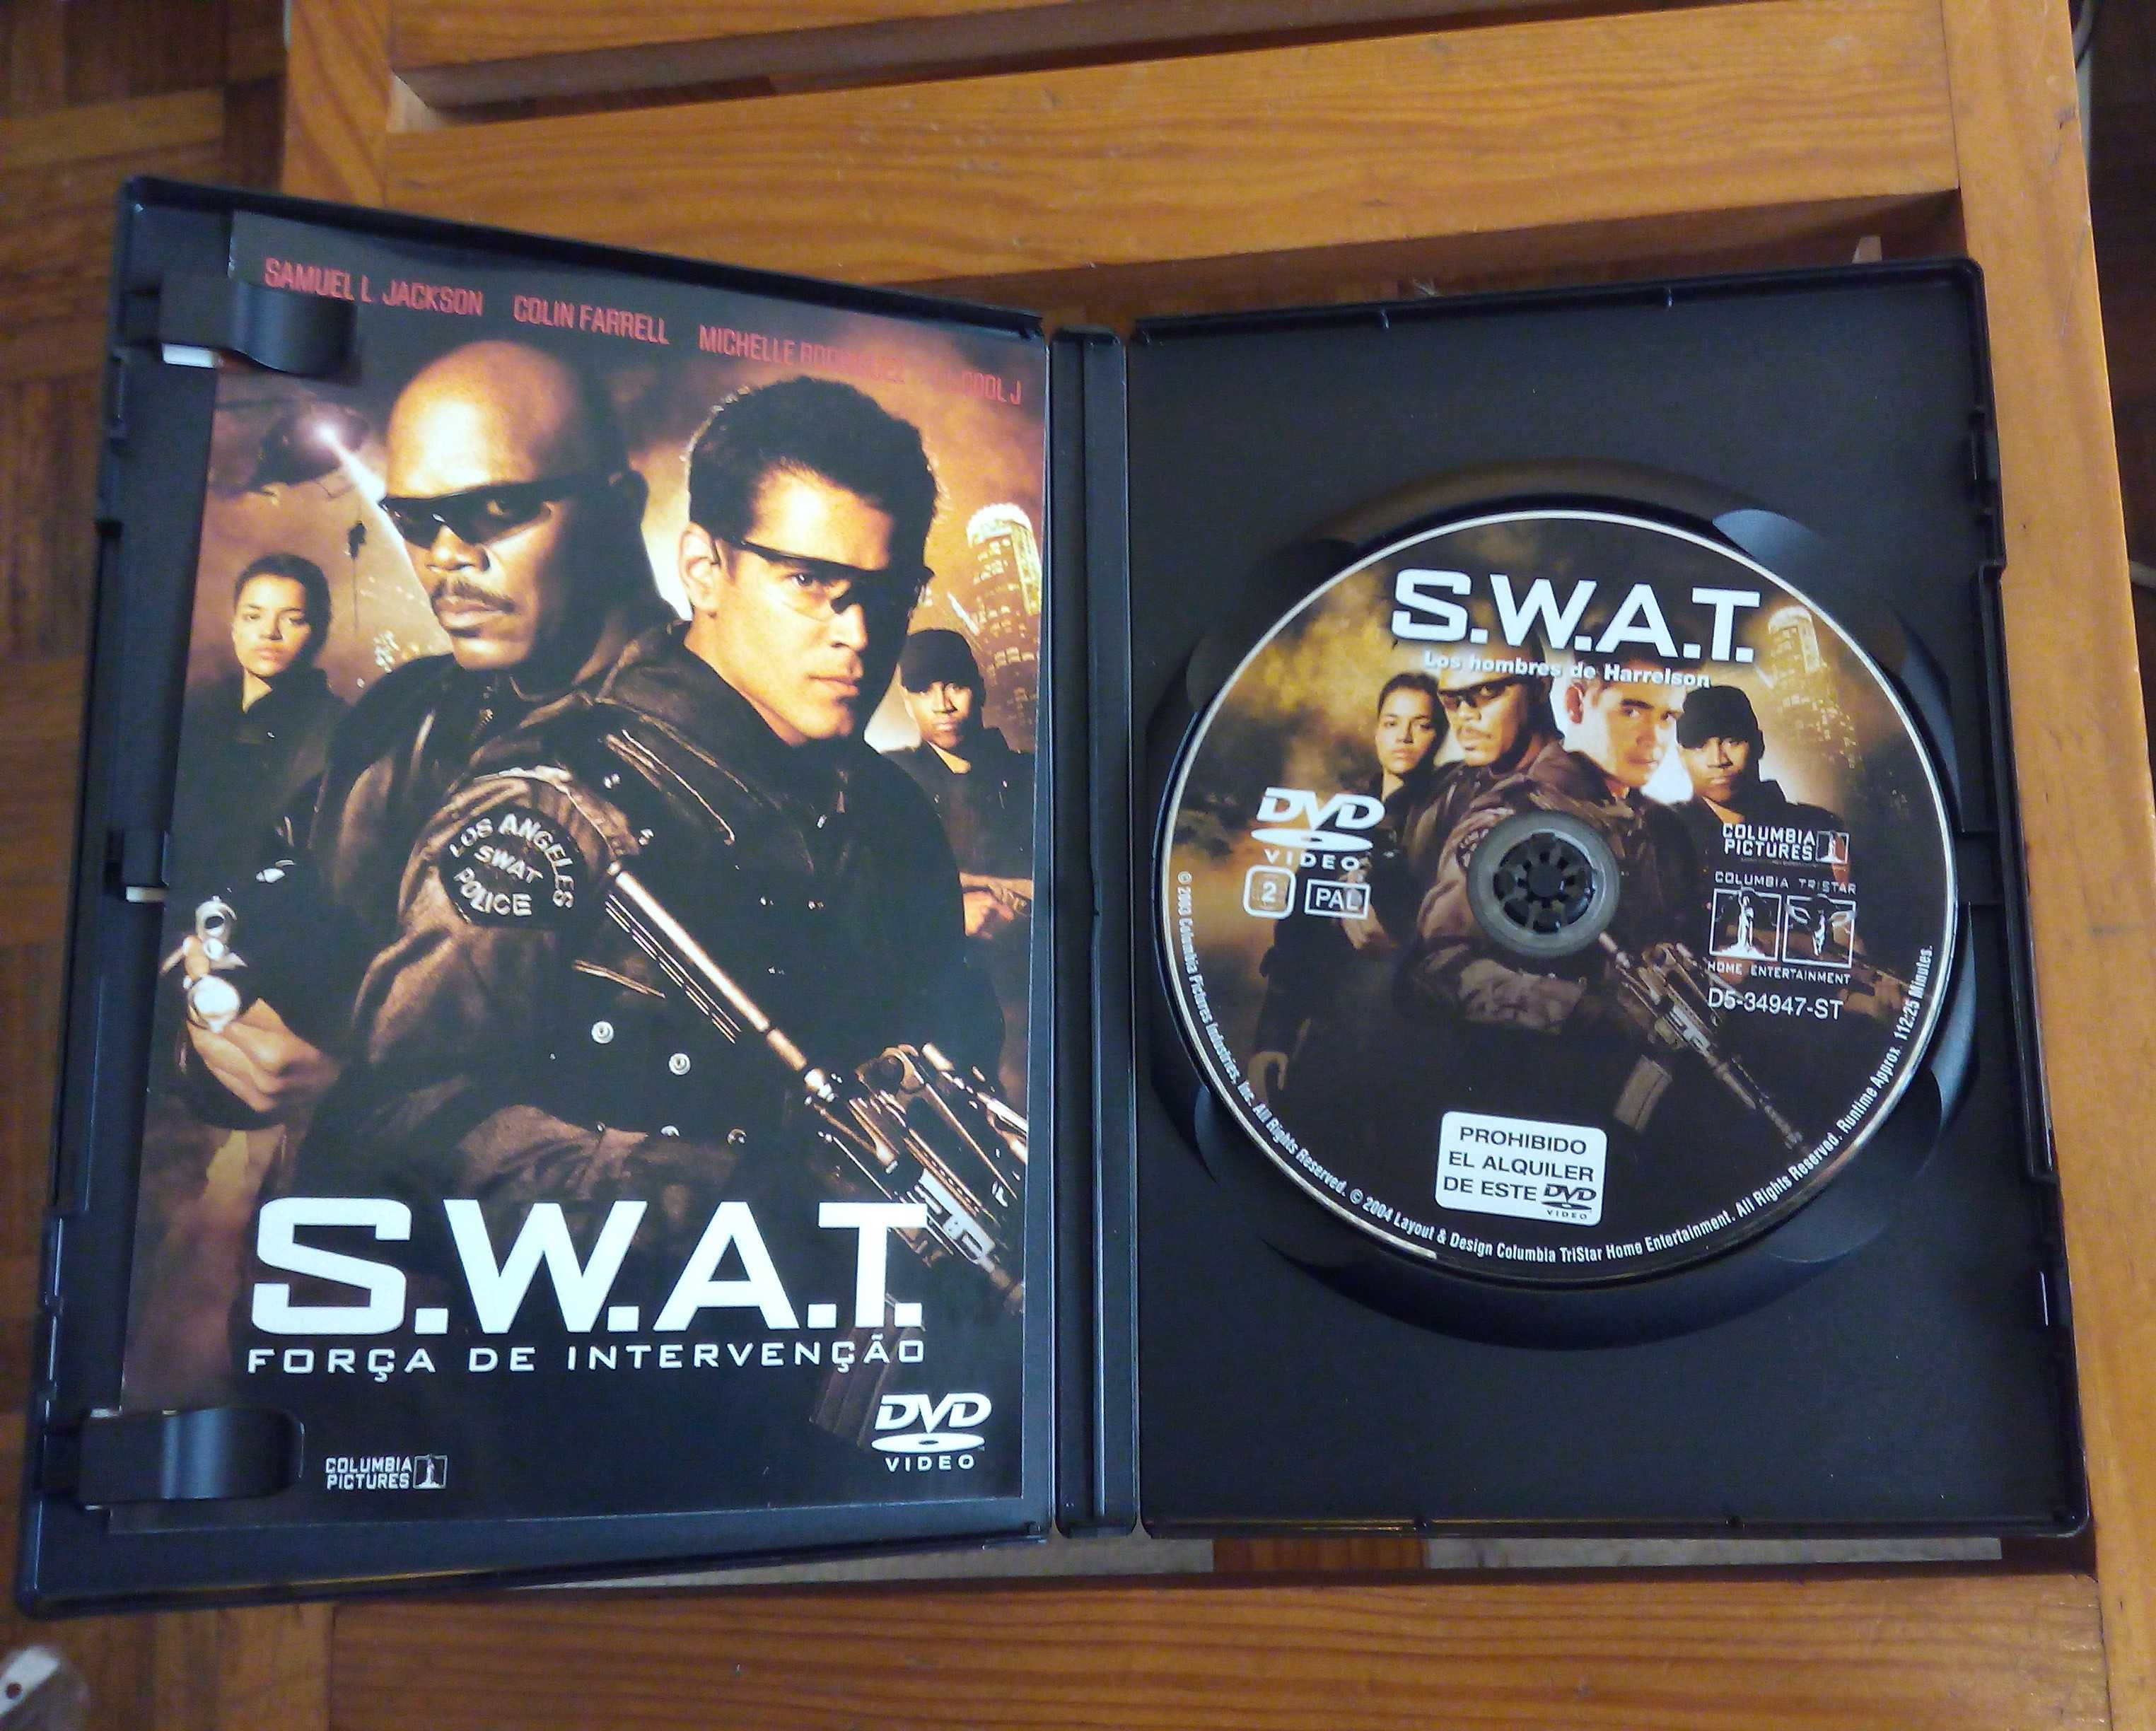 S.W.A.T. - Força de Intervenção (Colin Farrell, Samuel L. Jackson)